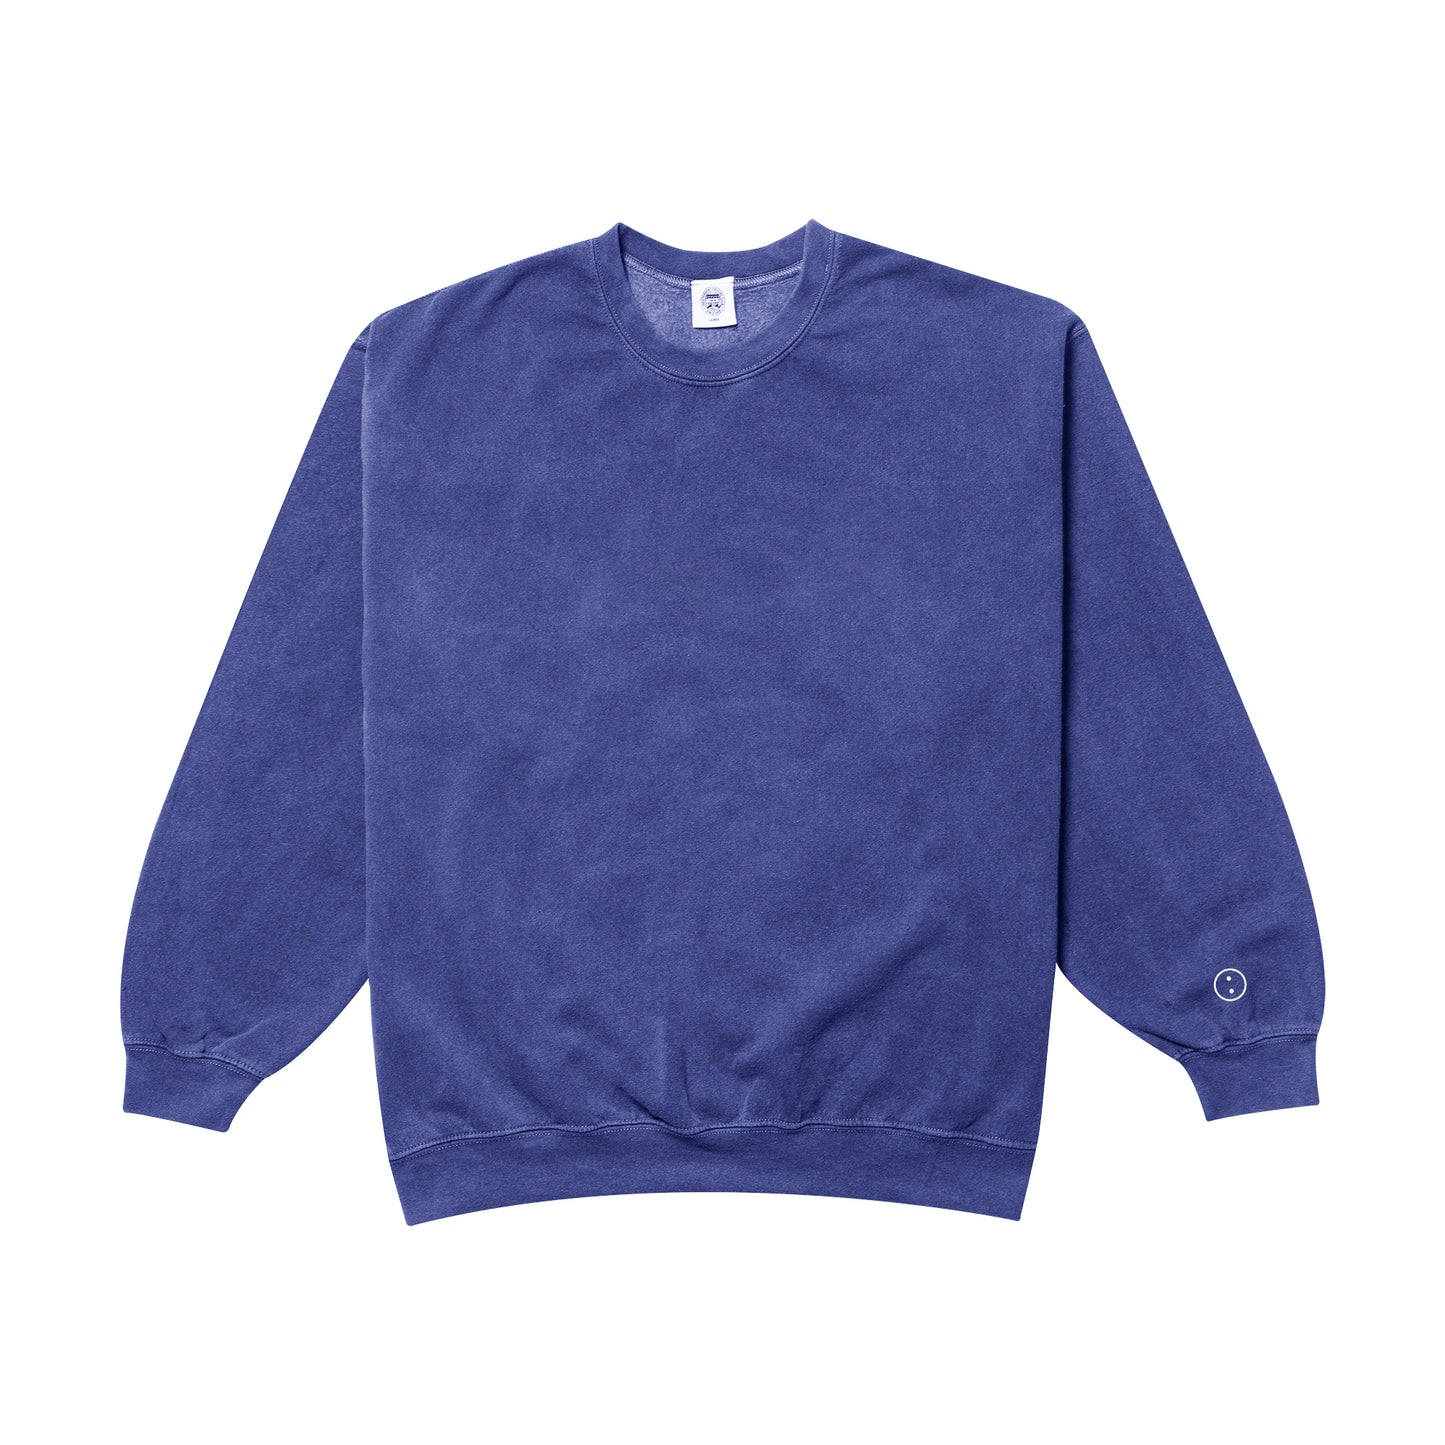 Essentials Vintage Washed Sweater - Navy